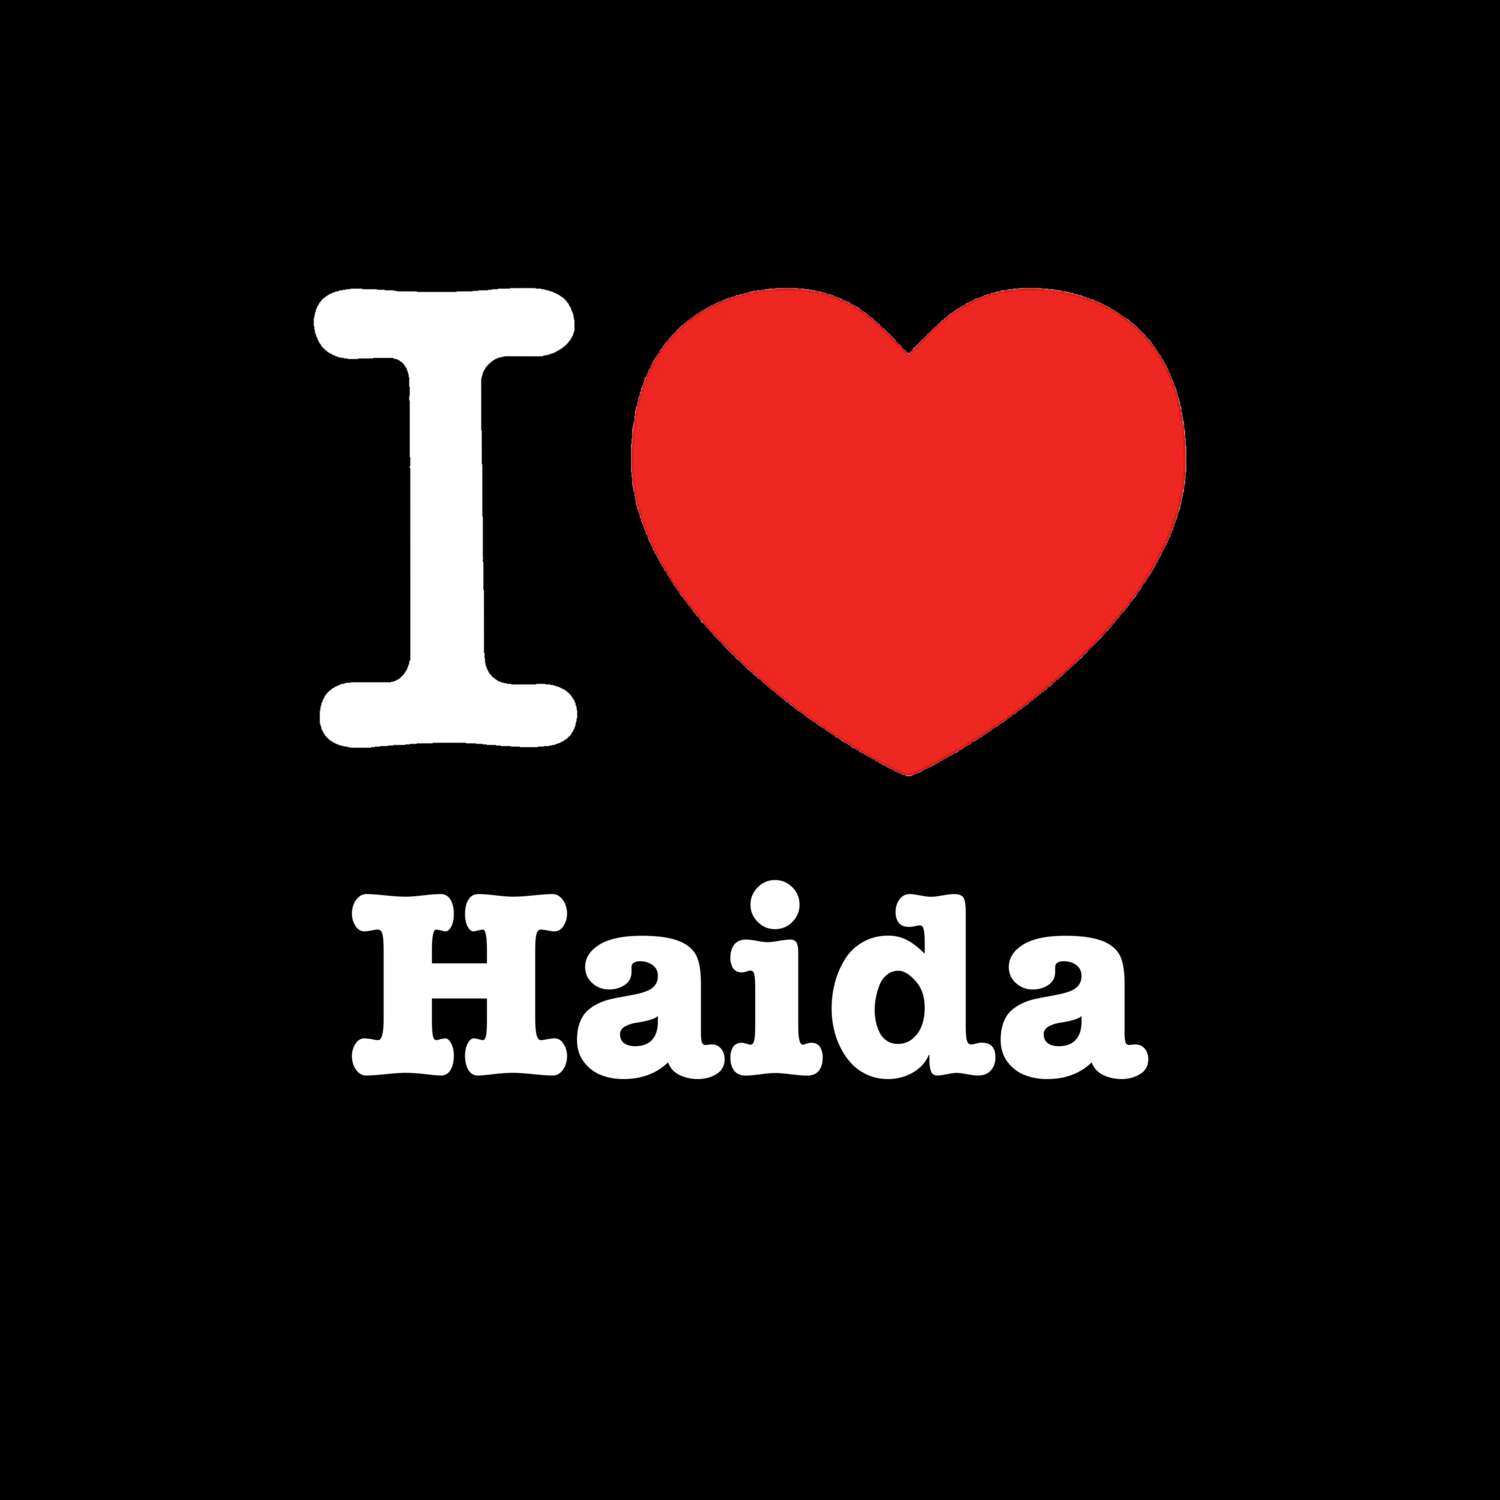 Haida T-Shirt »I love«